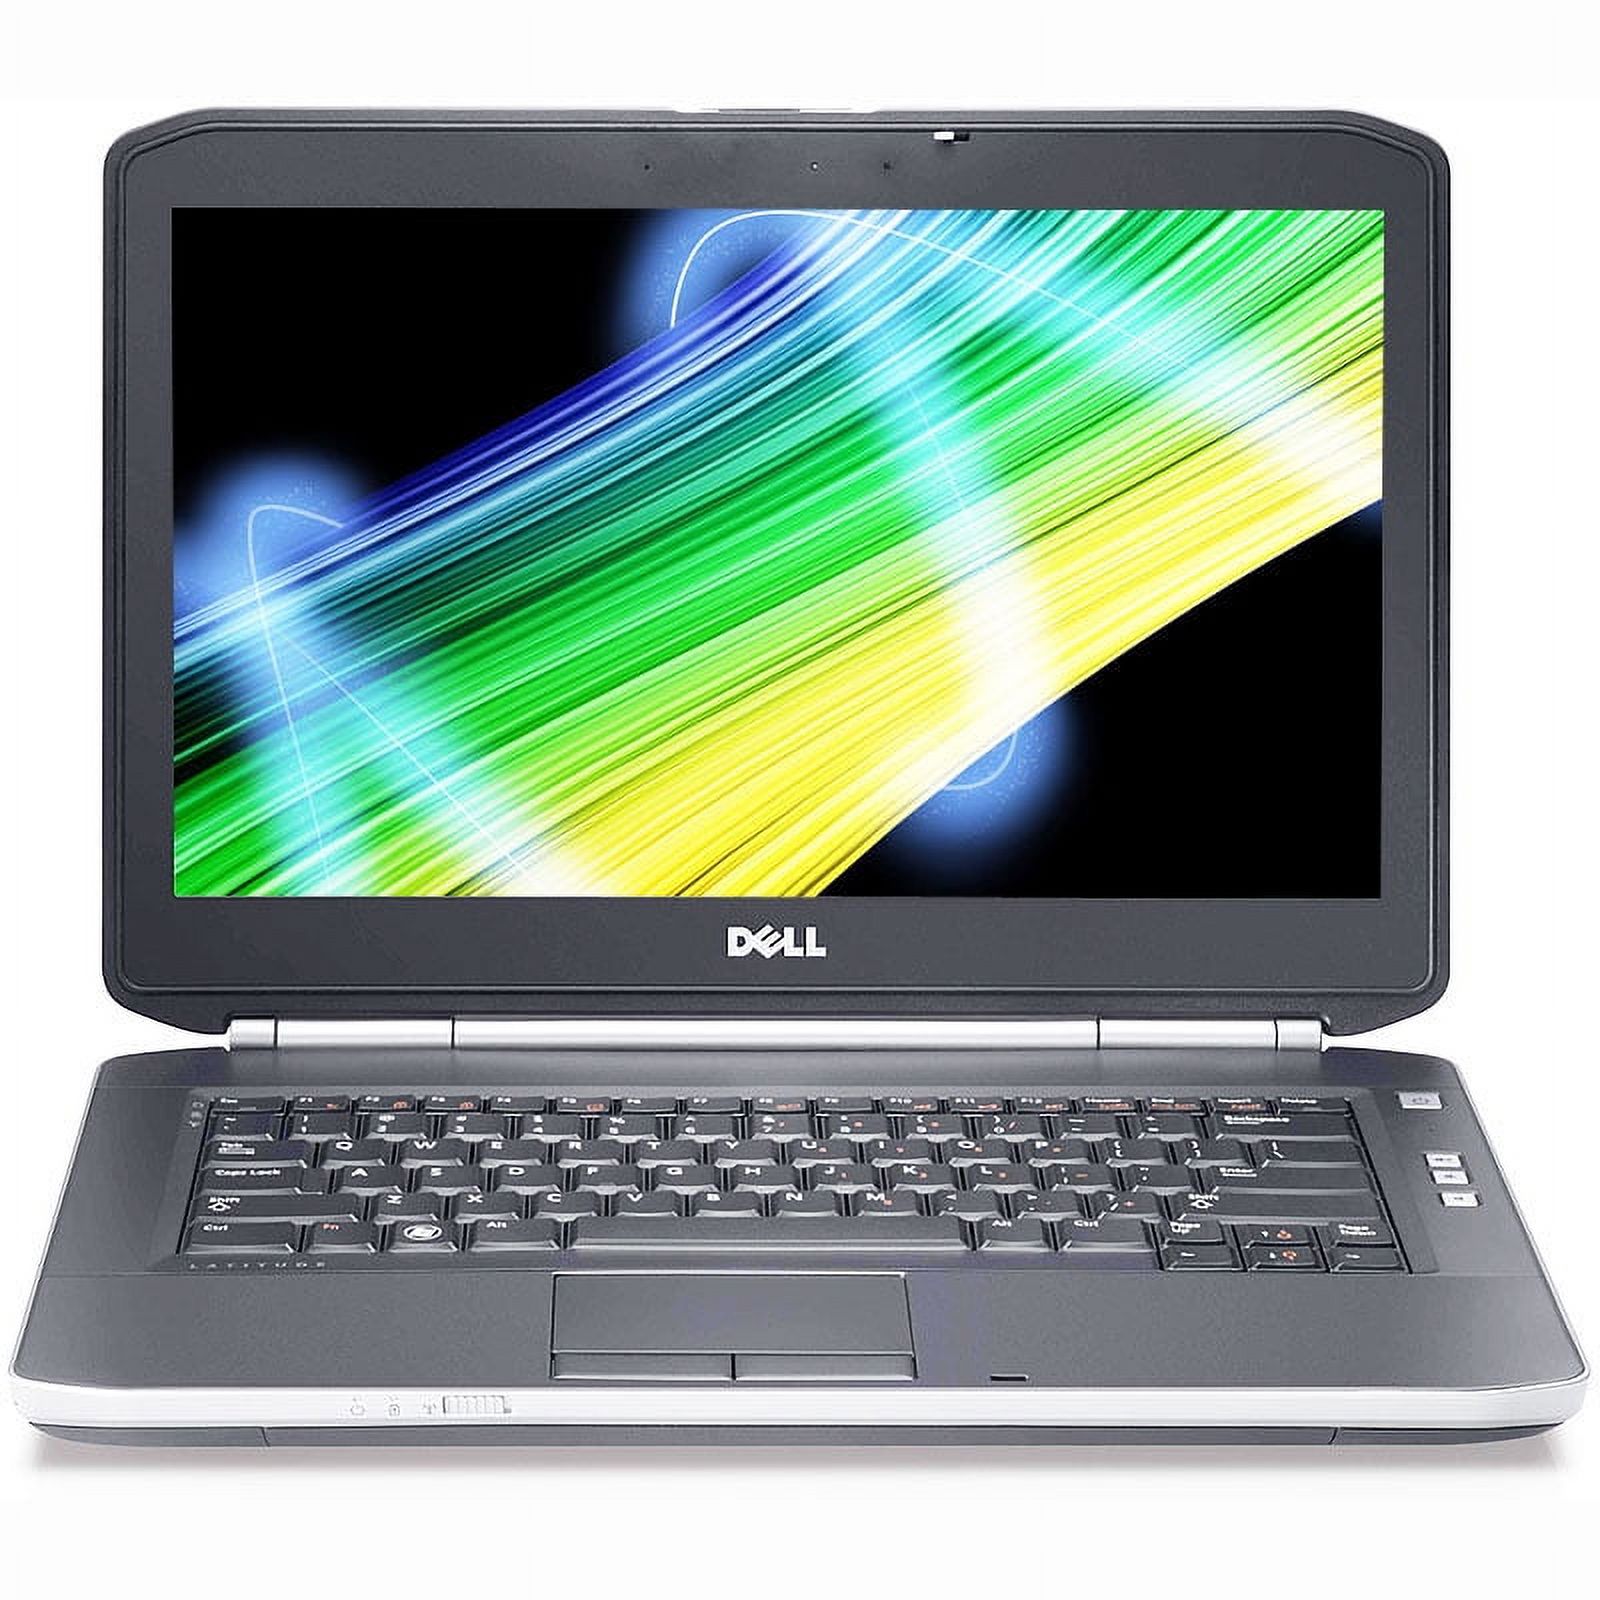 Pre-Owned Dell Latitude E5430 i3 2.4GHz 4GB 320GB DVDRW Win 10 Pro 64 Laptop Computer B - image 1 of 4